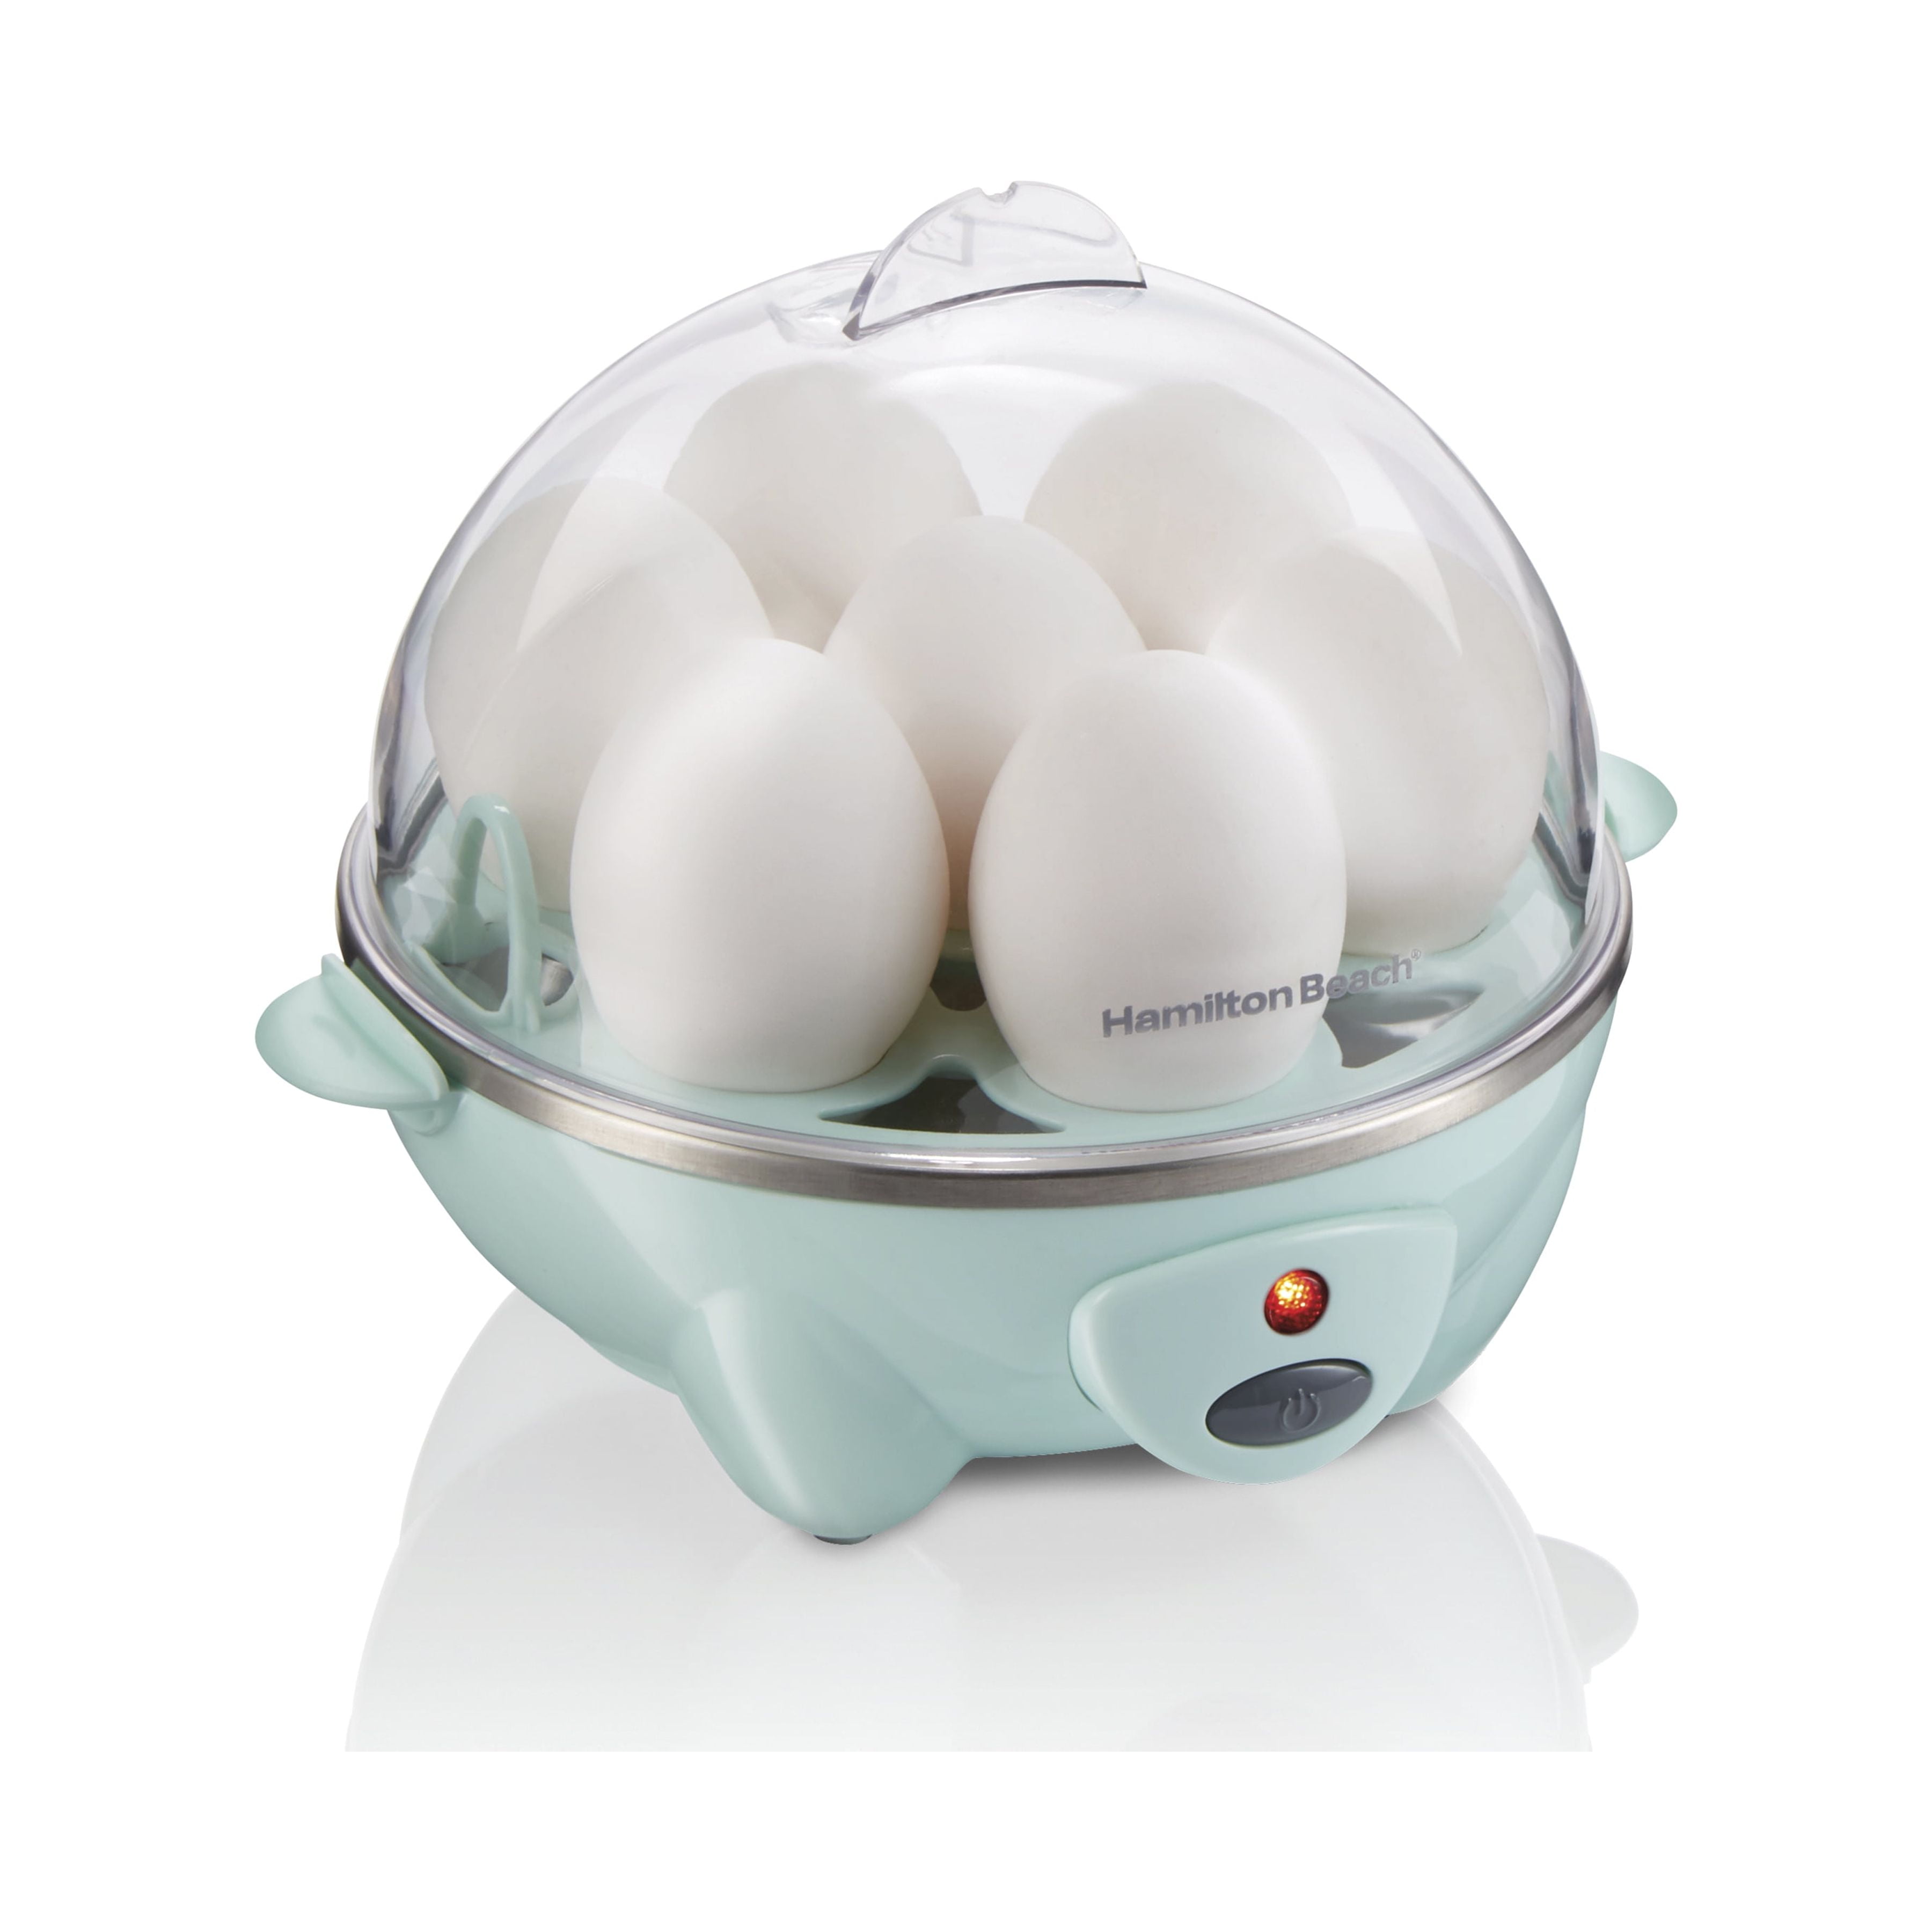 Eggpod by Emson Egg Cooker Wireless Microwave Hardboiled Egg Maker, Cooker,  Egg Boiler & Steamer, 4 Perfectly-Cooked Hard boiled Eggs in Under 9